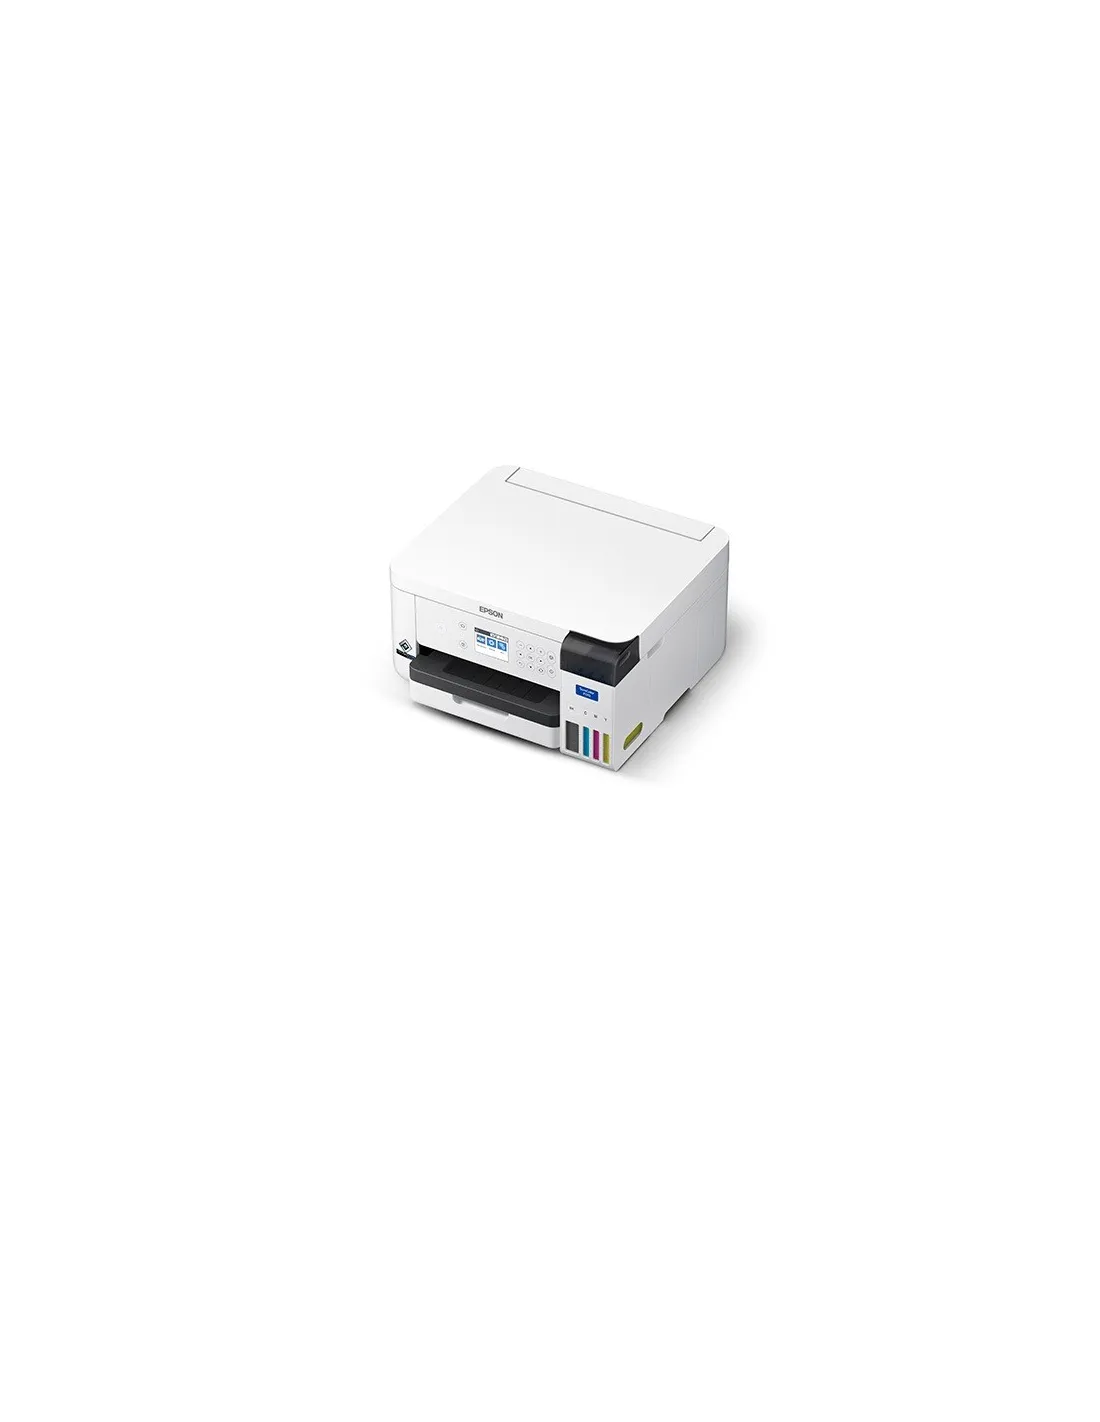 Impresora de Sublimacion Epson SureColor F170 USB 2.0 Inalambrica